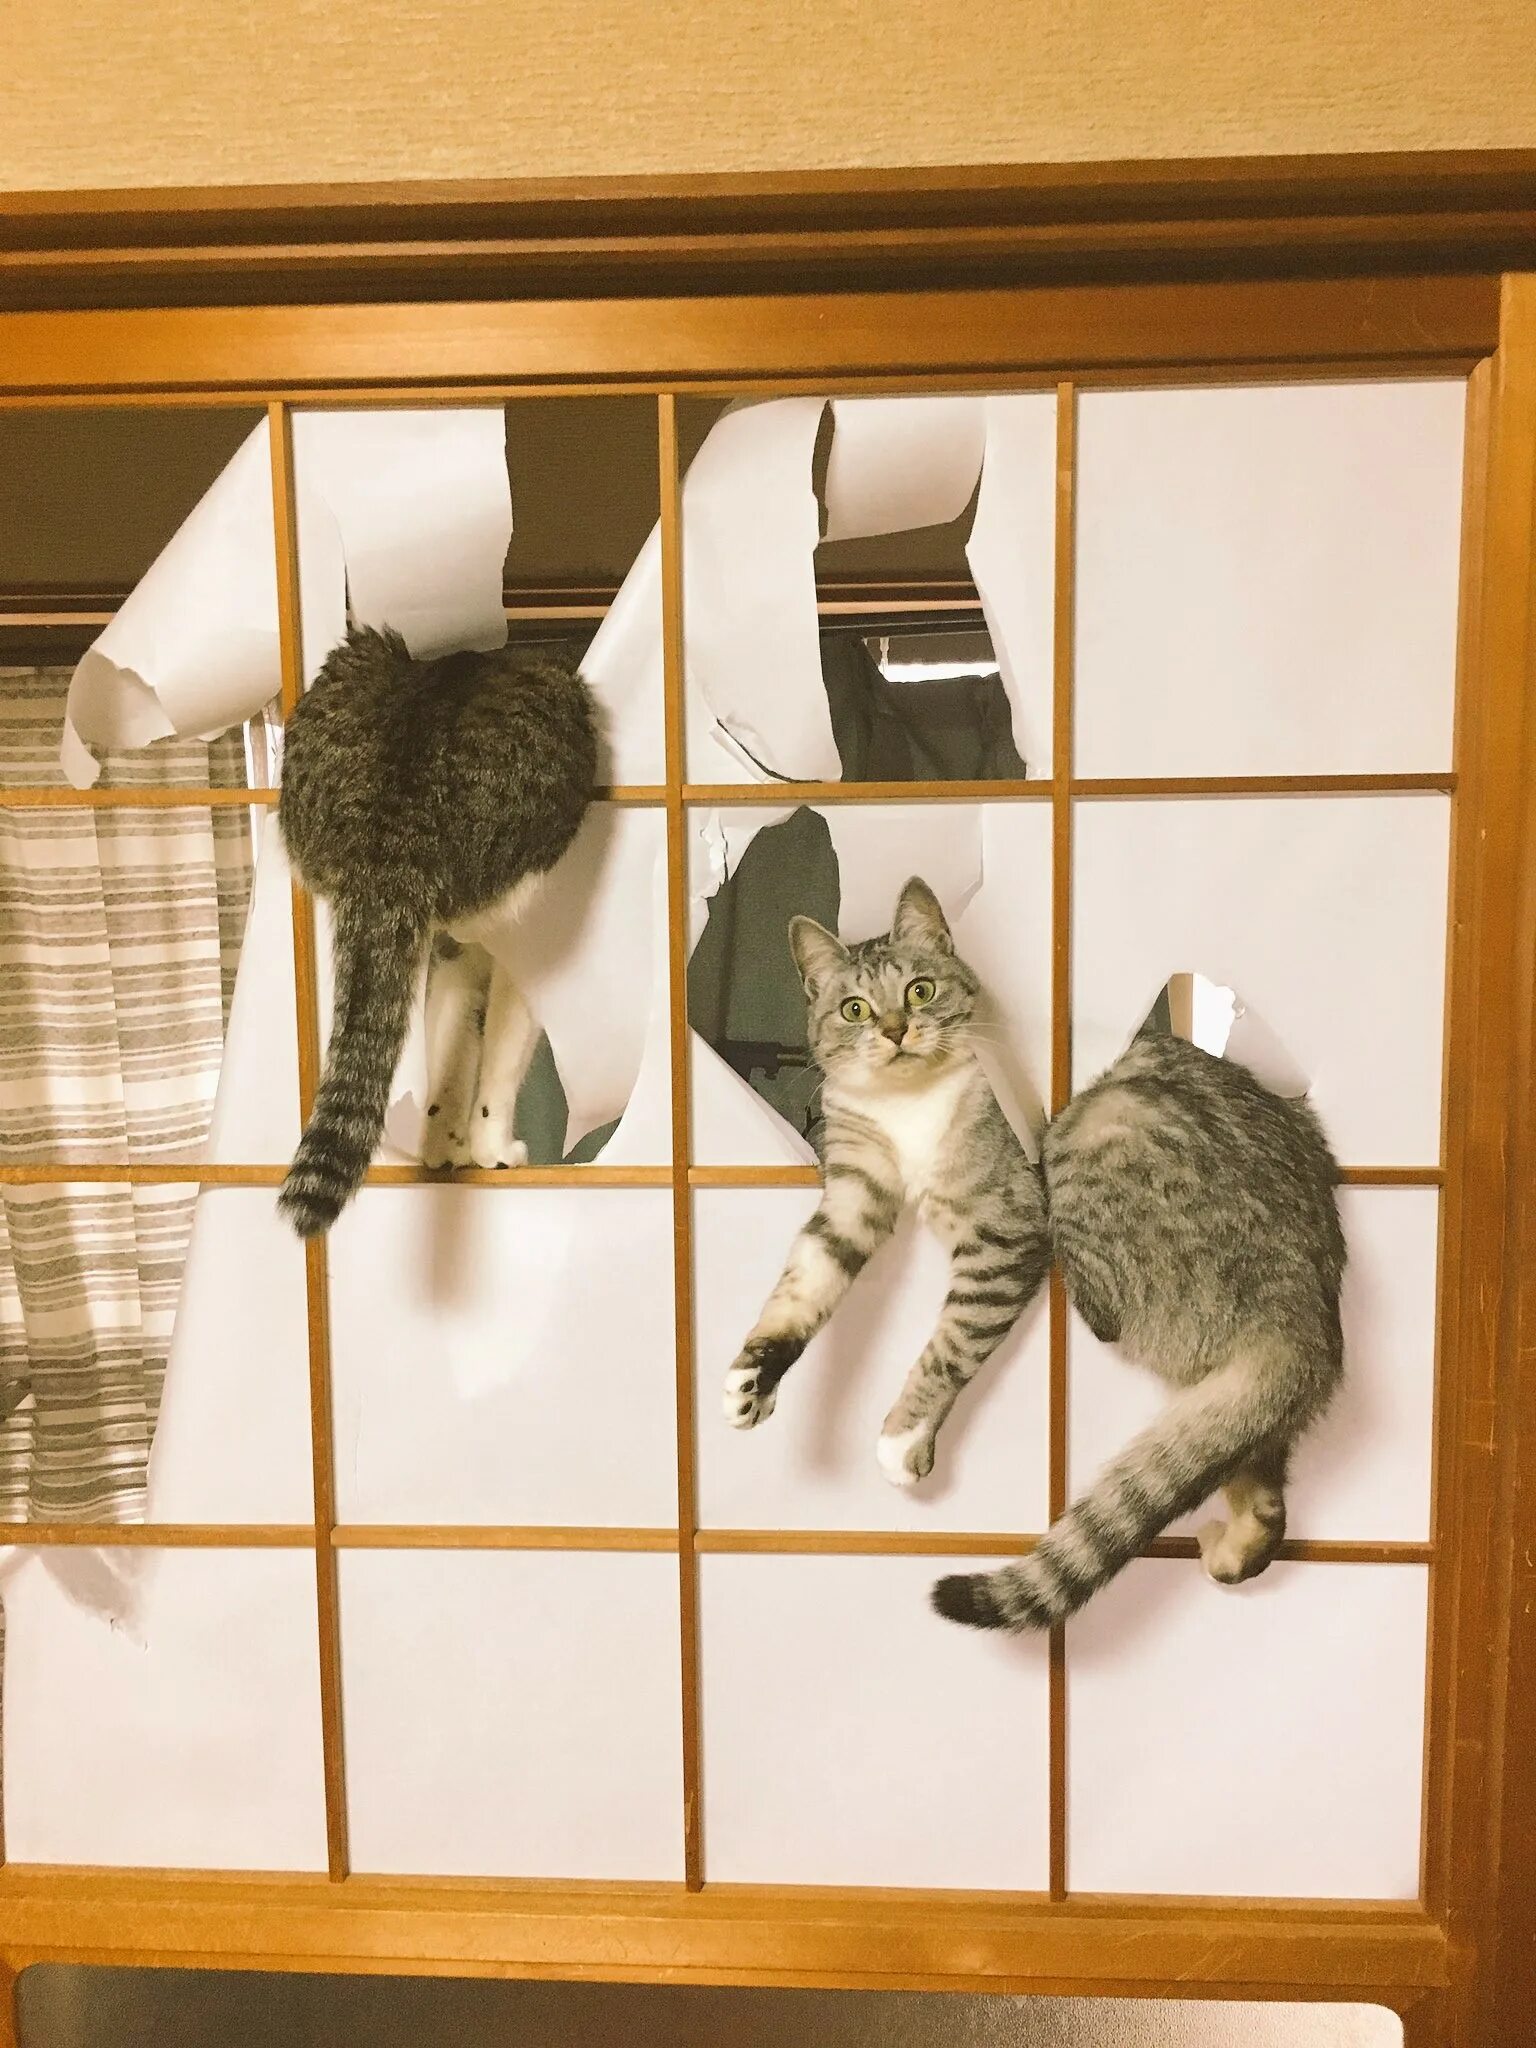 Коты портят. Котики и японские двери. Кот хулиган. Кошки шкодят. Коты хулиганят.